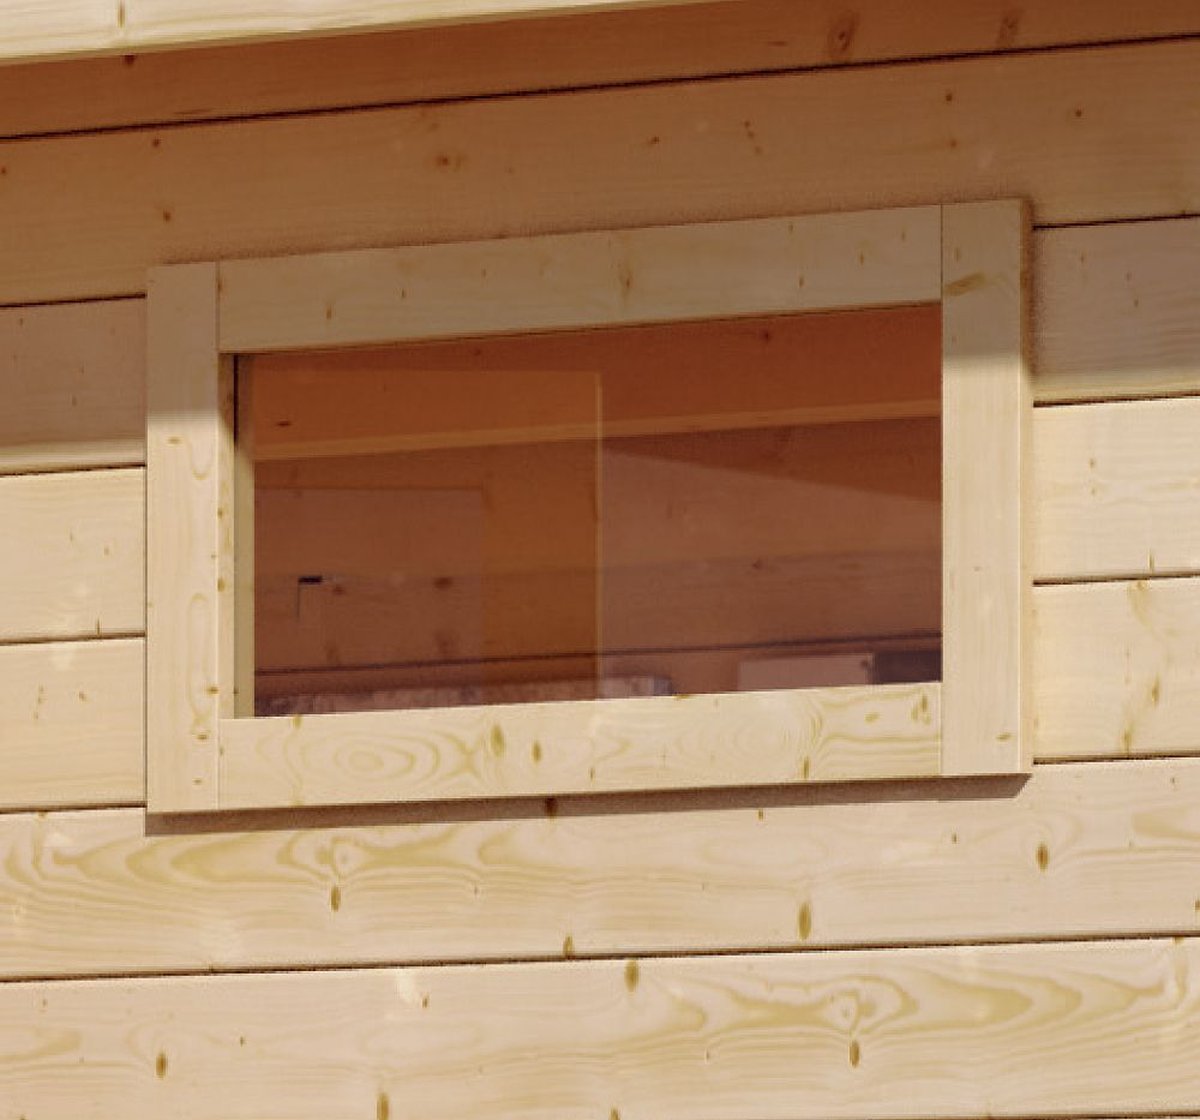 Fenster feststehend 44x85 cm naturbelassen mit Kunstglas, zum Selbsteinbau in 28 mm Holzwand